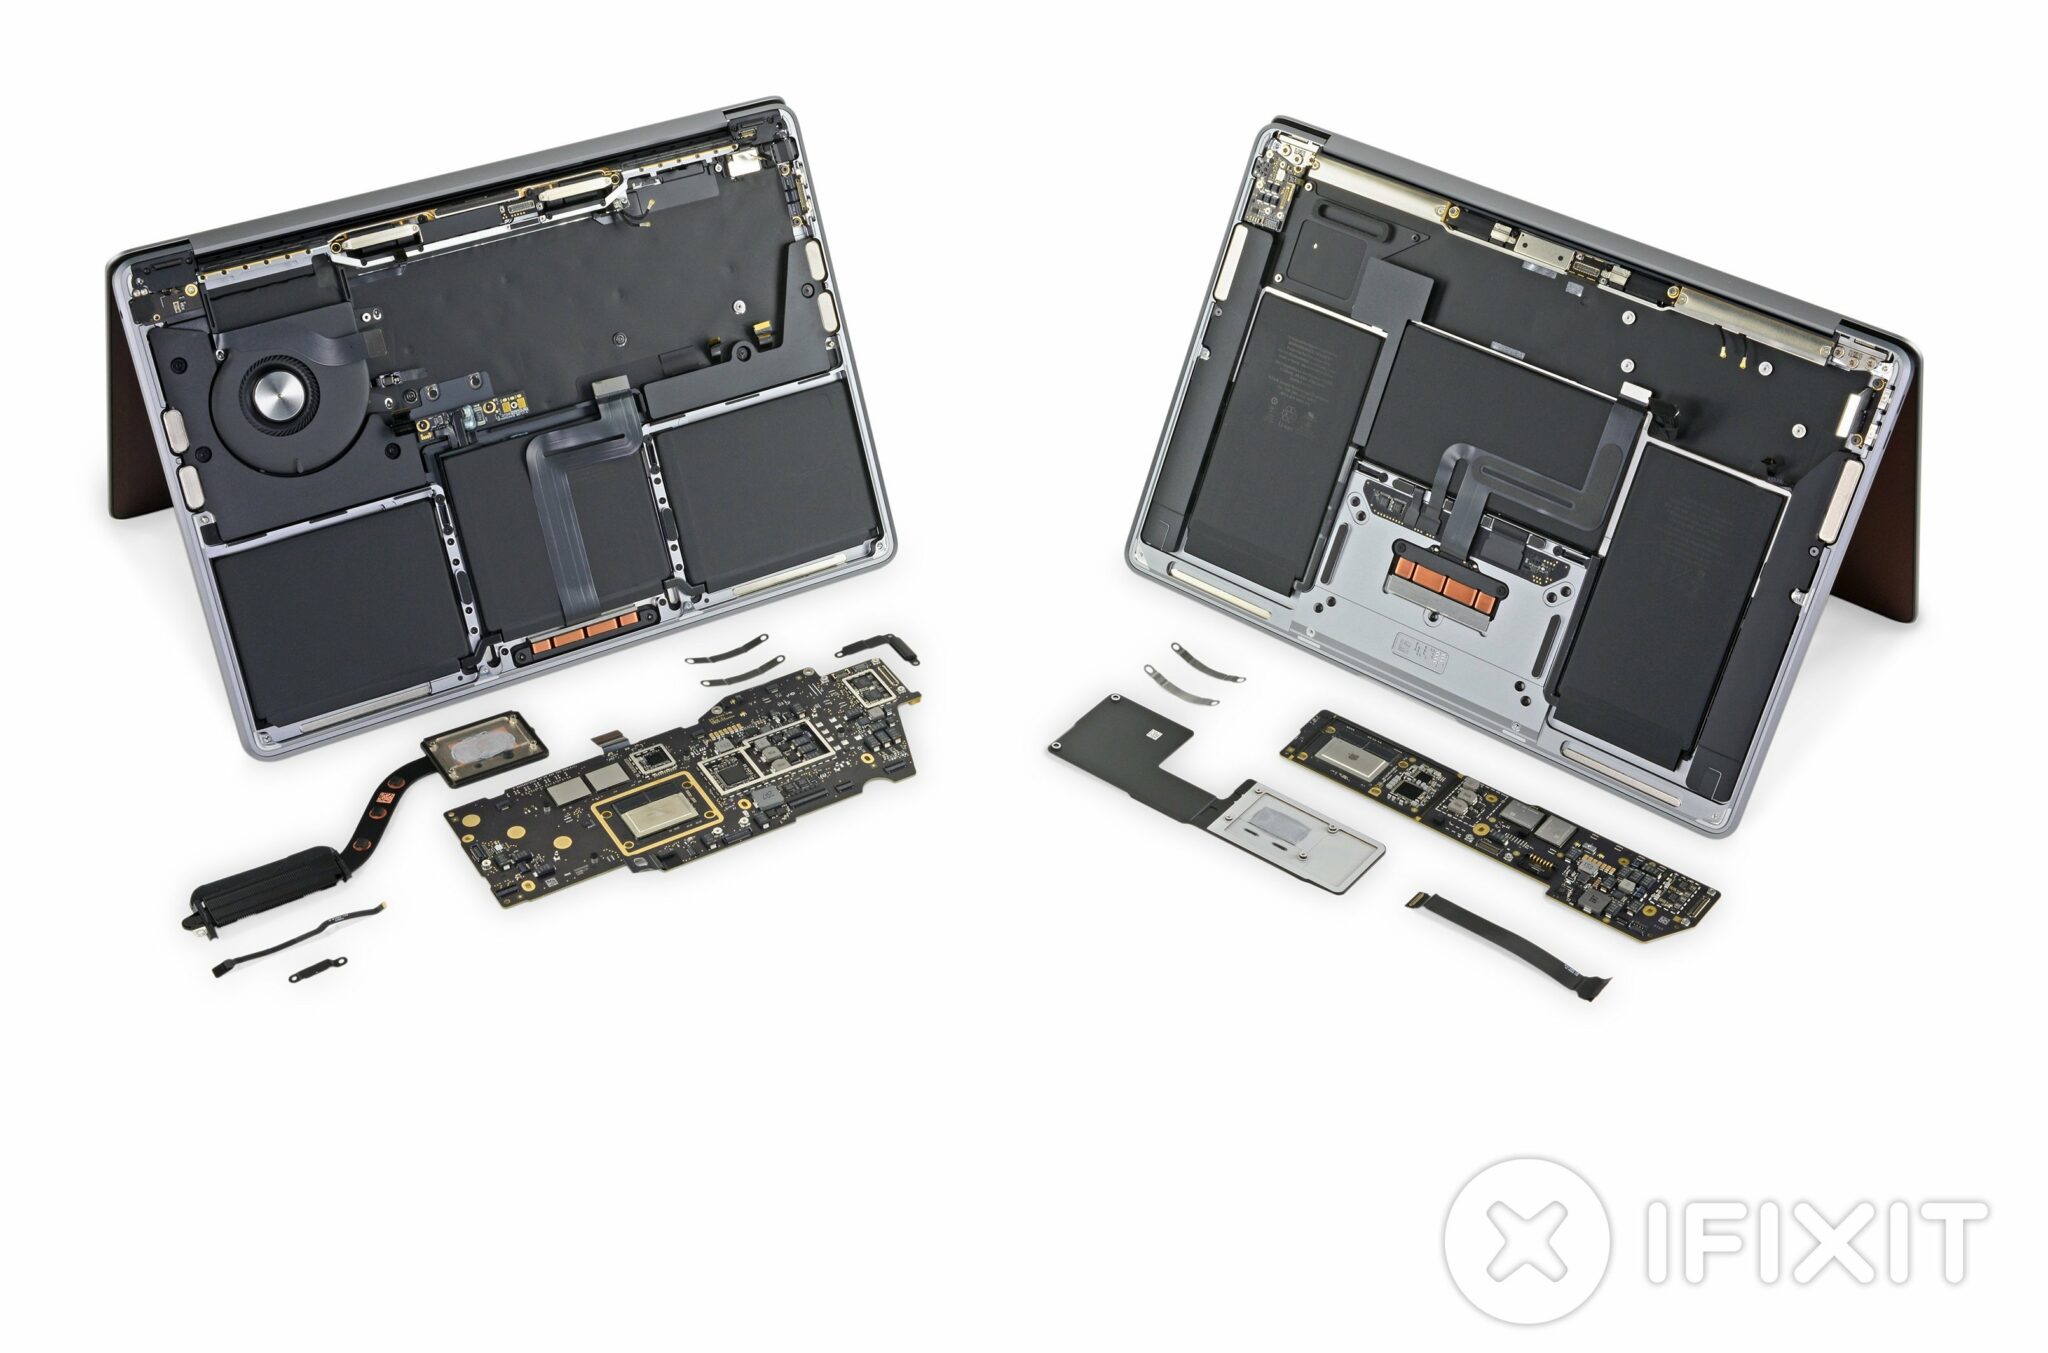 M1 MacBook Air and MacBook Pro Teardown